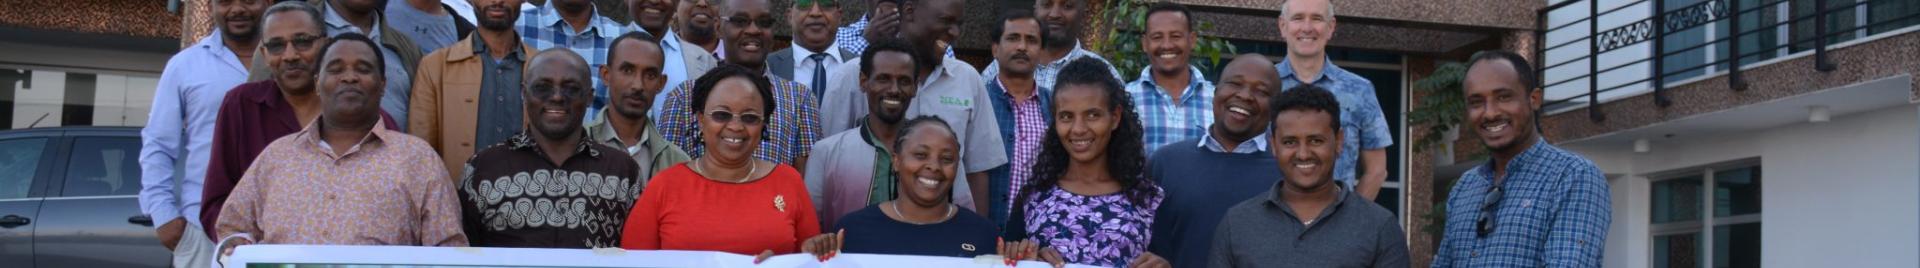 Stakeholders hold meeting in Ethiopia. Credit Inbar